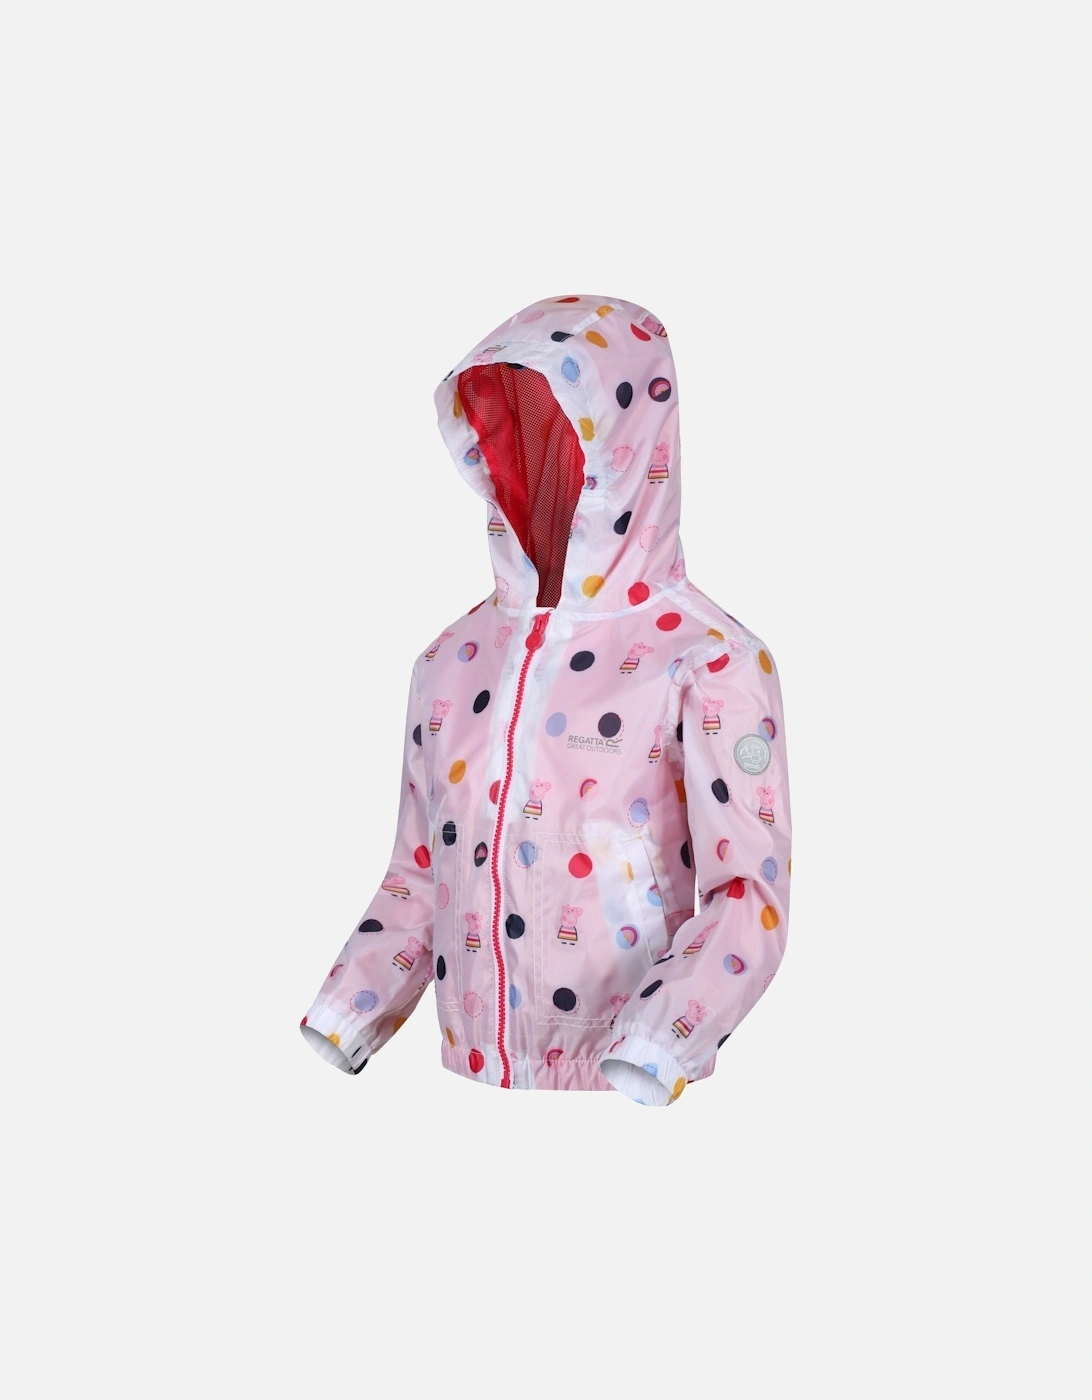 Childrens/Kids Peppa Pig Polka Dot Hooded Waterproof Jacket